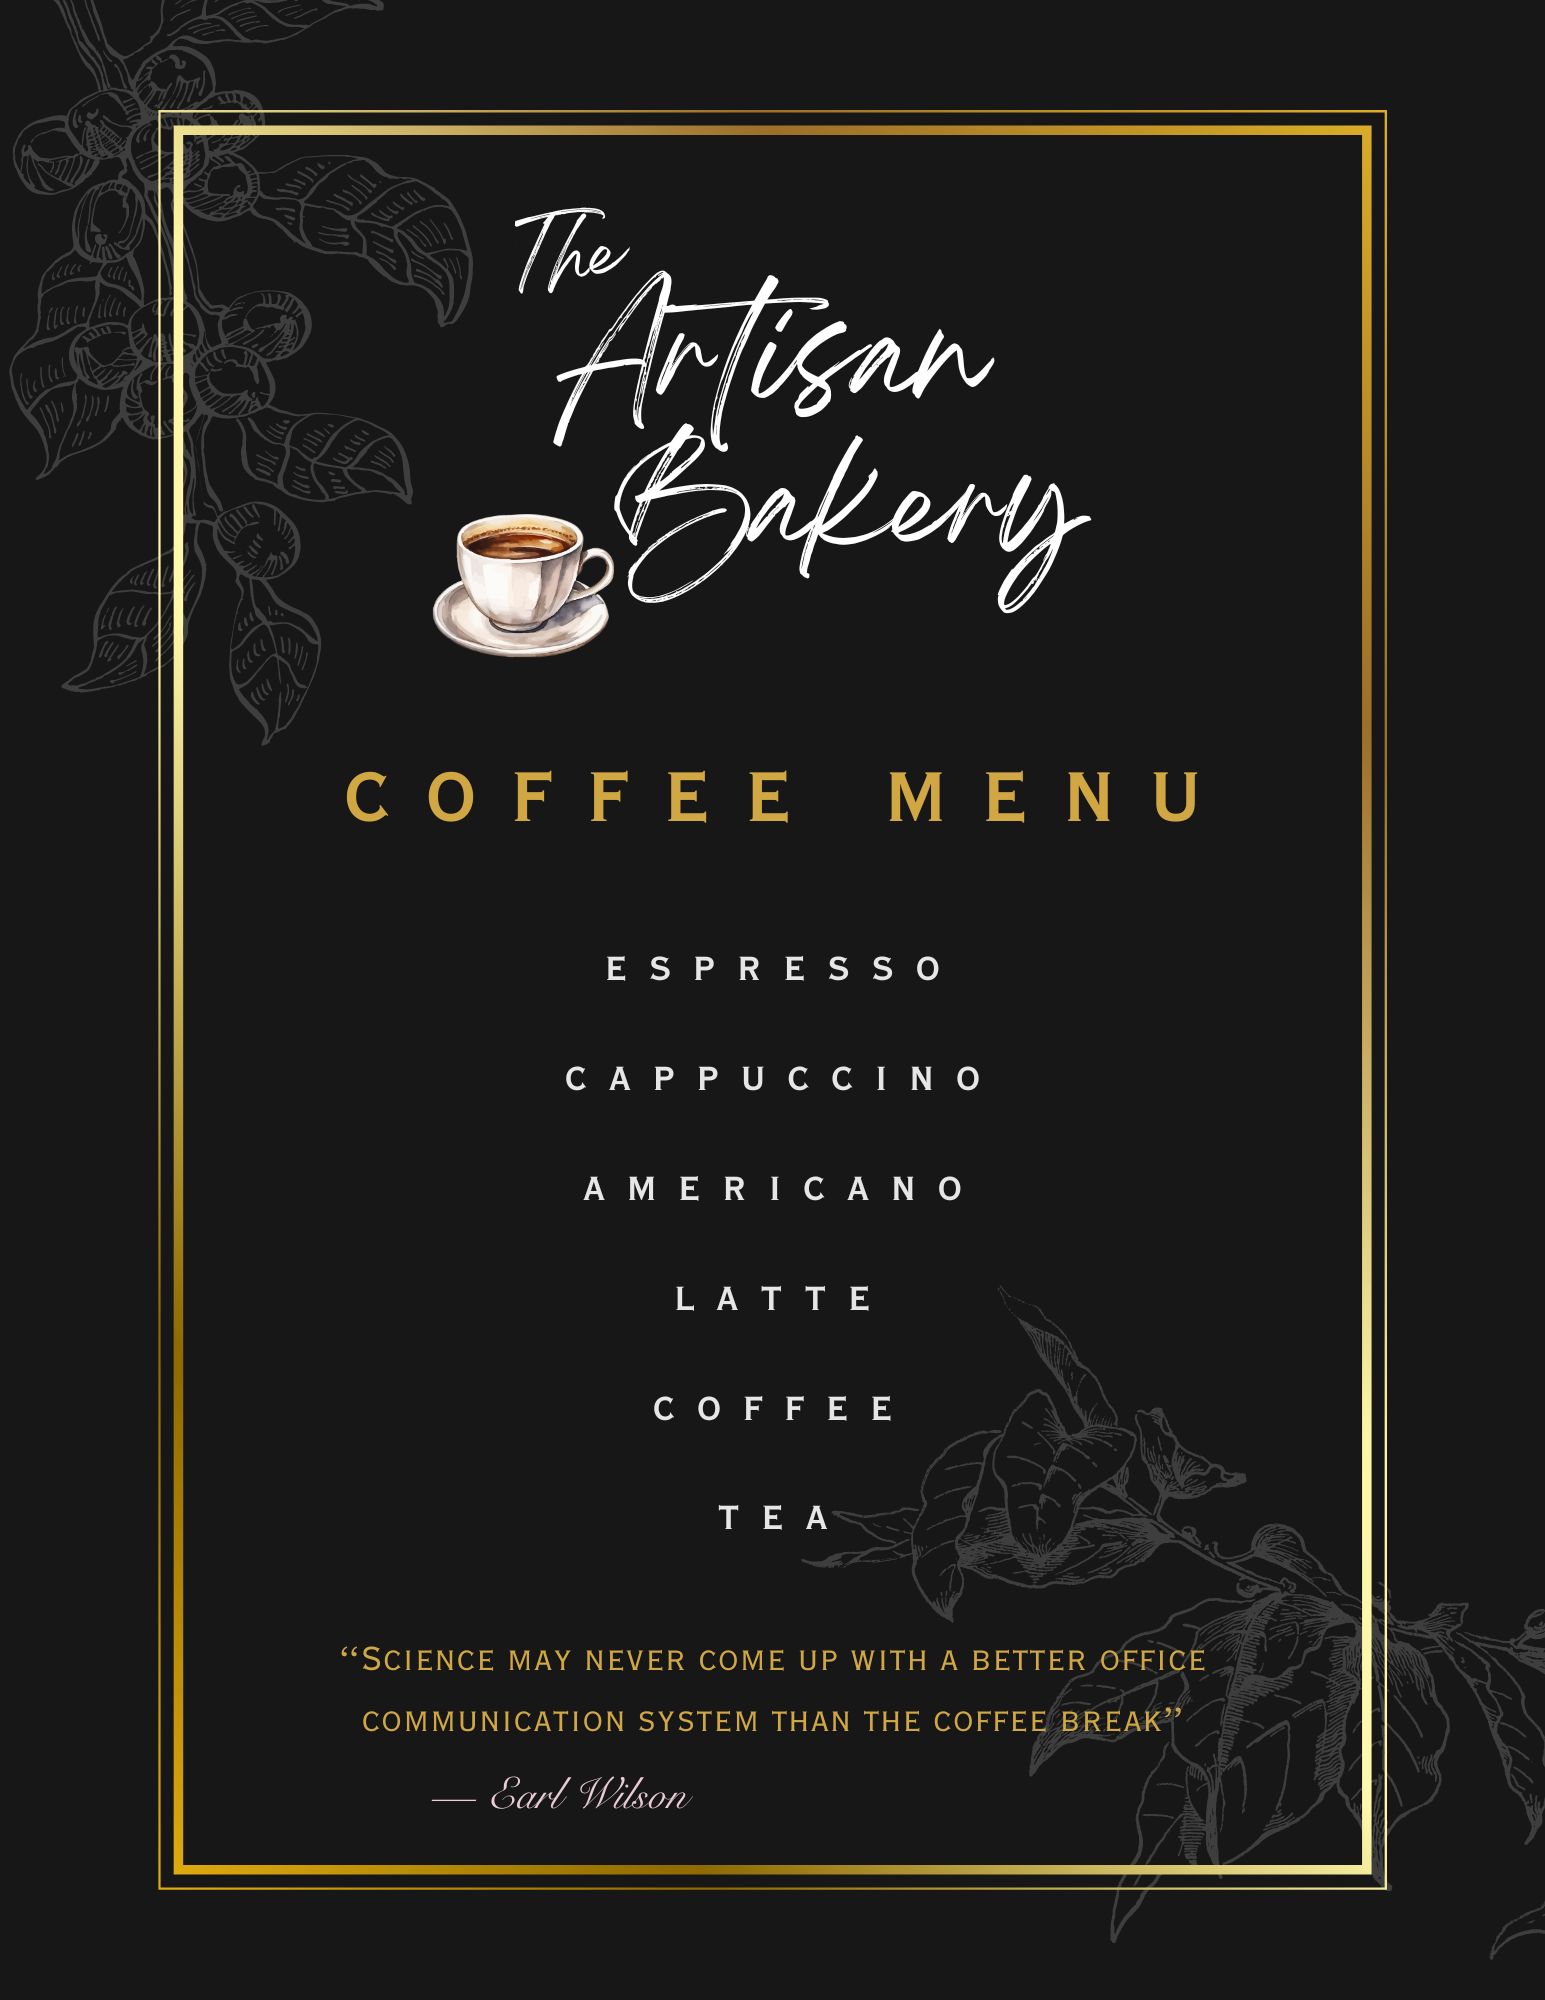 Artisan coffee menu includes espresso, cappuccino, americano, latte, coffee, and tea.